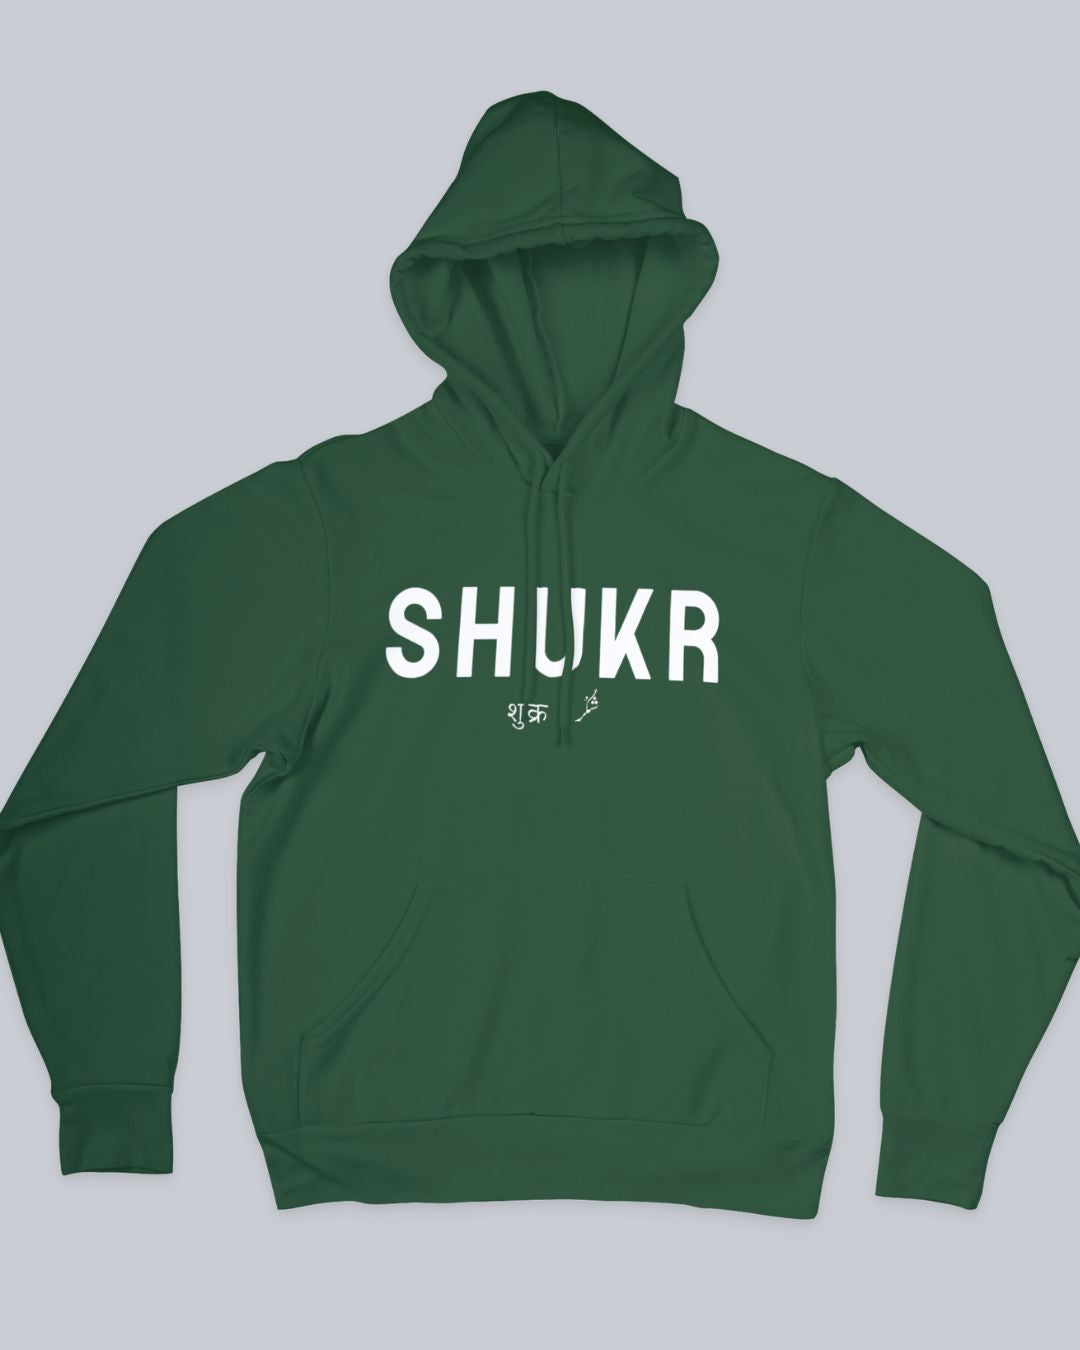 Shukr Unisex Hoodie available in Blue, Green Maroon, Black & White.   Urdu Hoodie, Poetry Hoodie, Shayari Hoodie, Rekhta Hoodie, Sukhanvar Merchandise, Rekhta Store Merchandise.